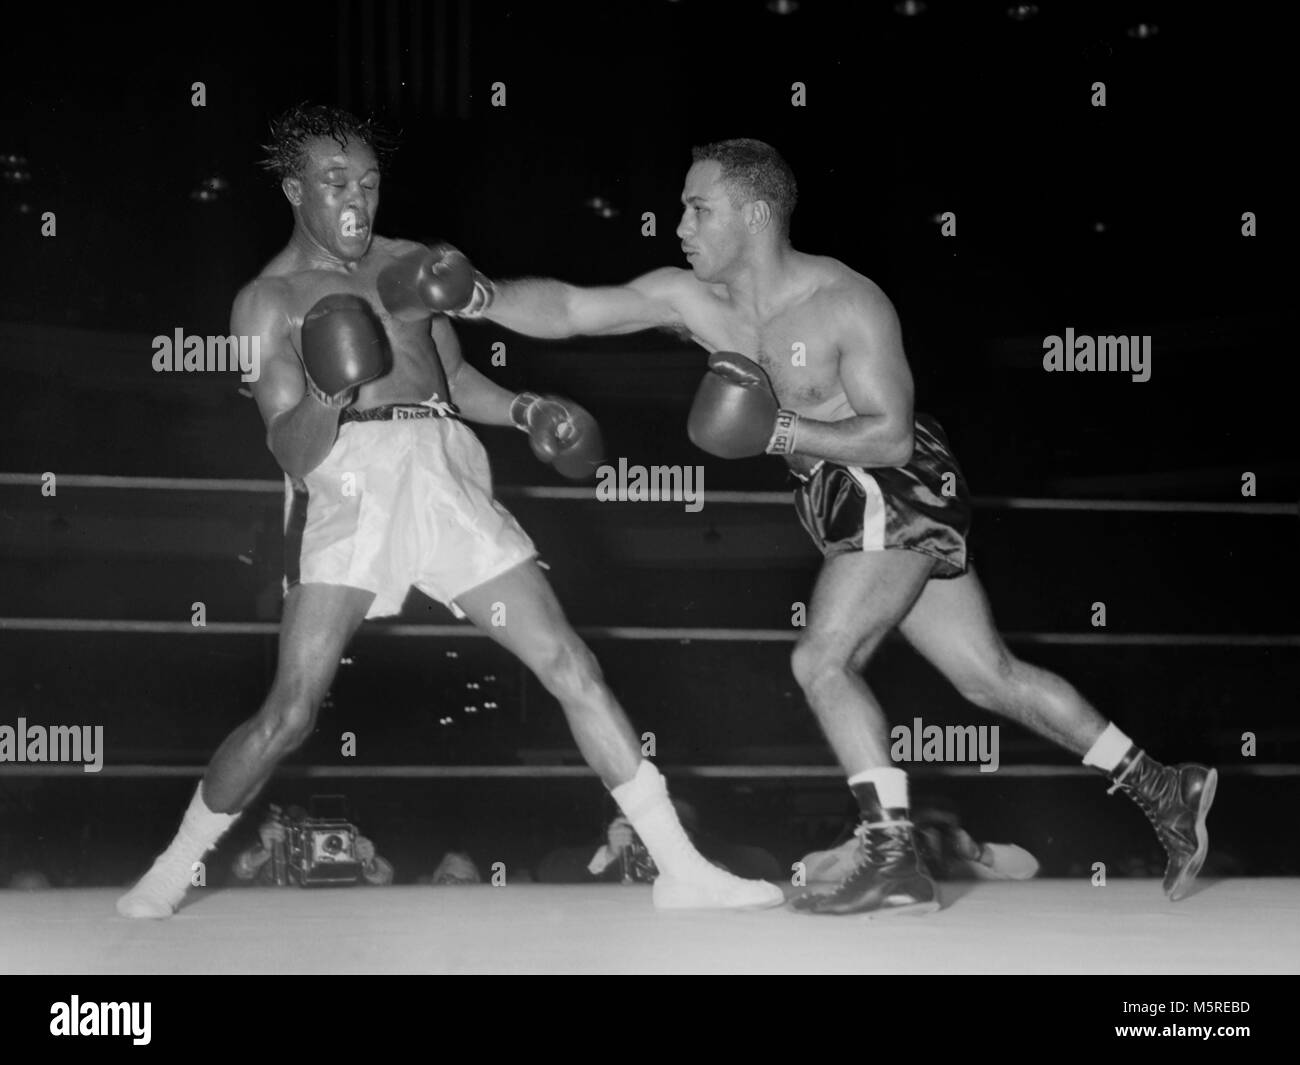 Kid Gavilan nimmt einen Durchschlag von Walter Byars bei einem Boxkampf in Chicago im Jahr 1957. Gavilan, aus Kuba, war ein welterweight World Champion. Stockfoto